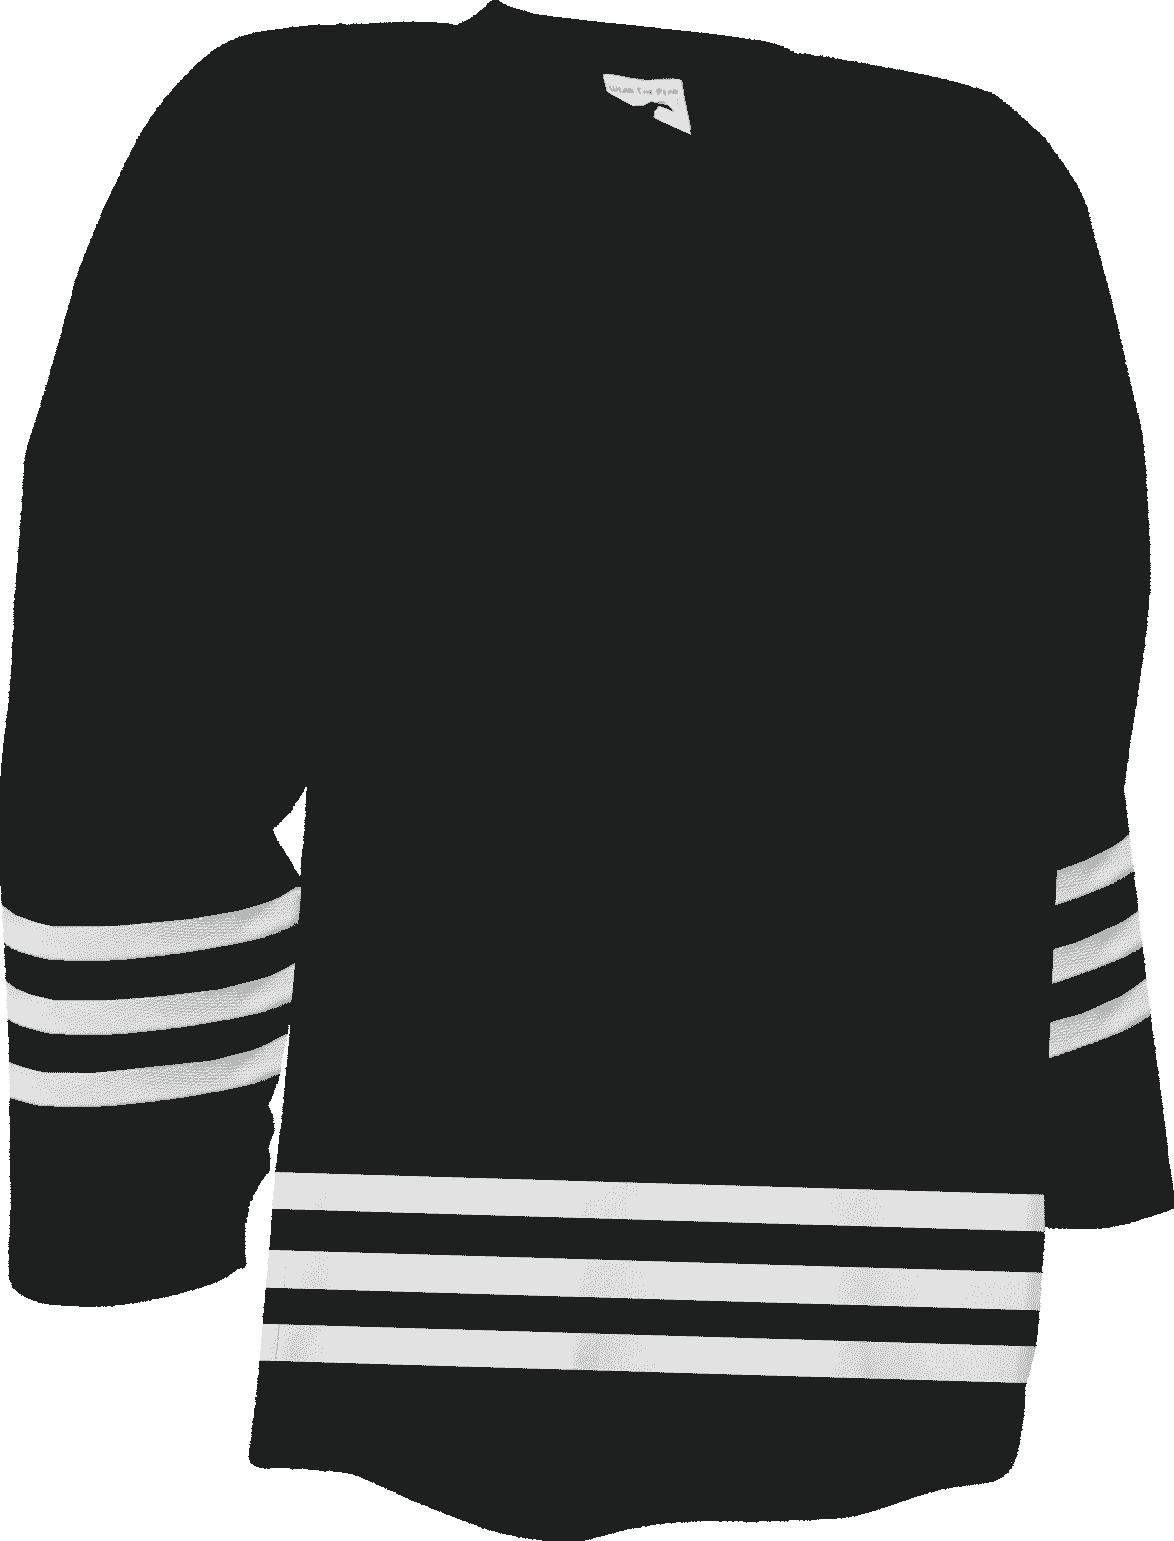 Pearsox Heritage Hockey Jersey - Black